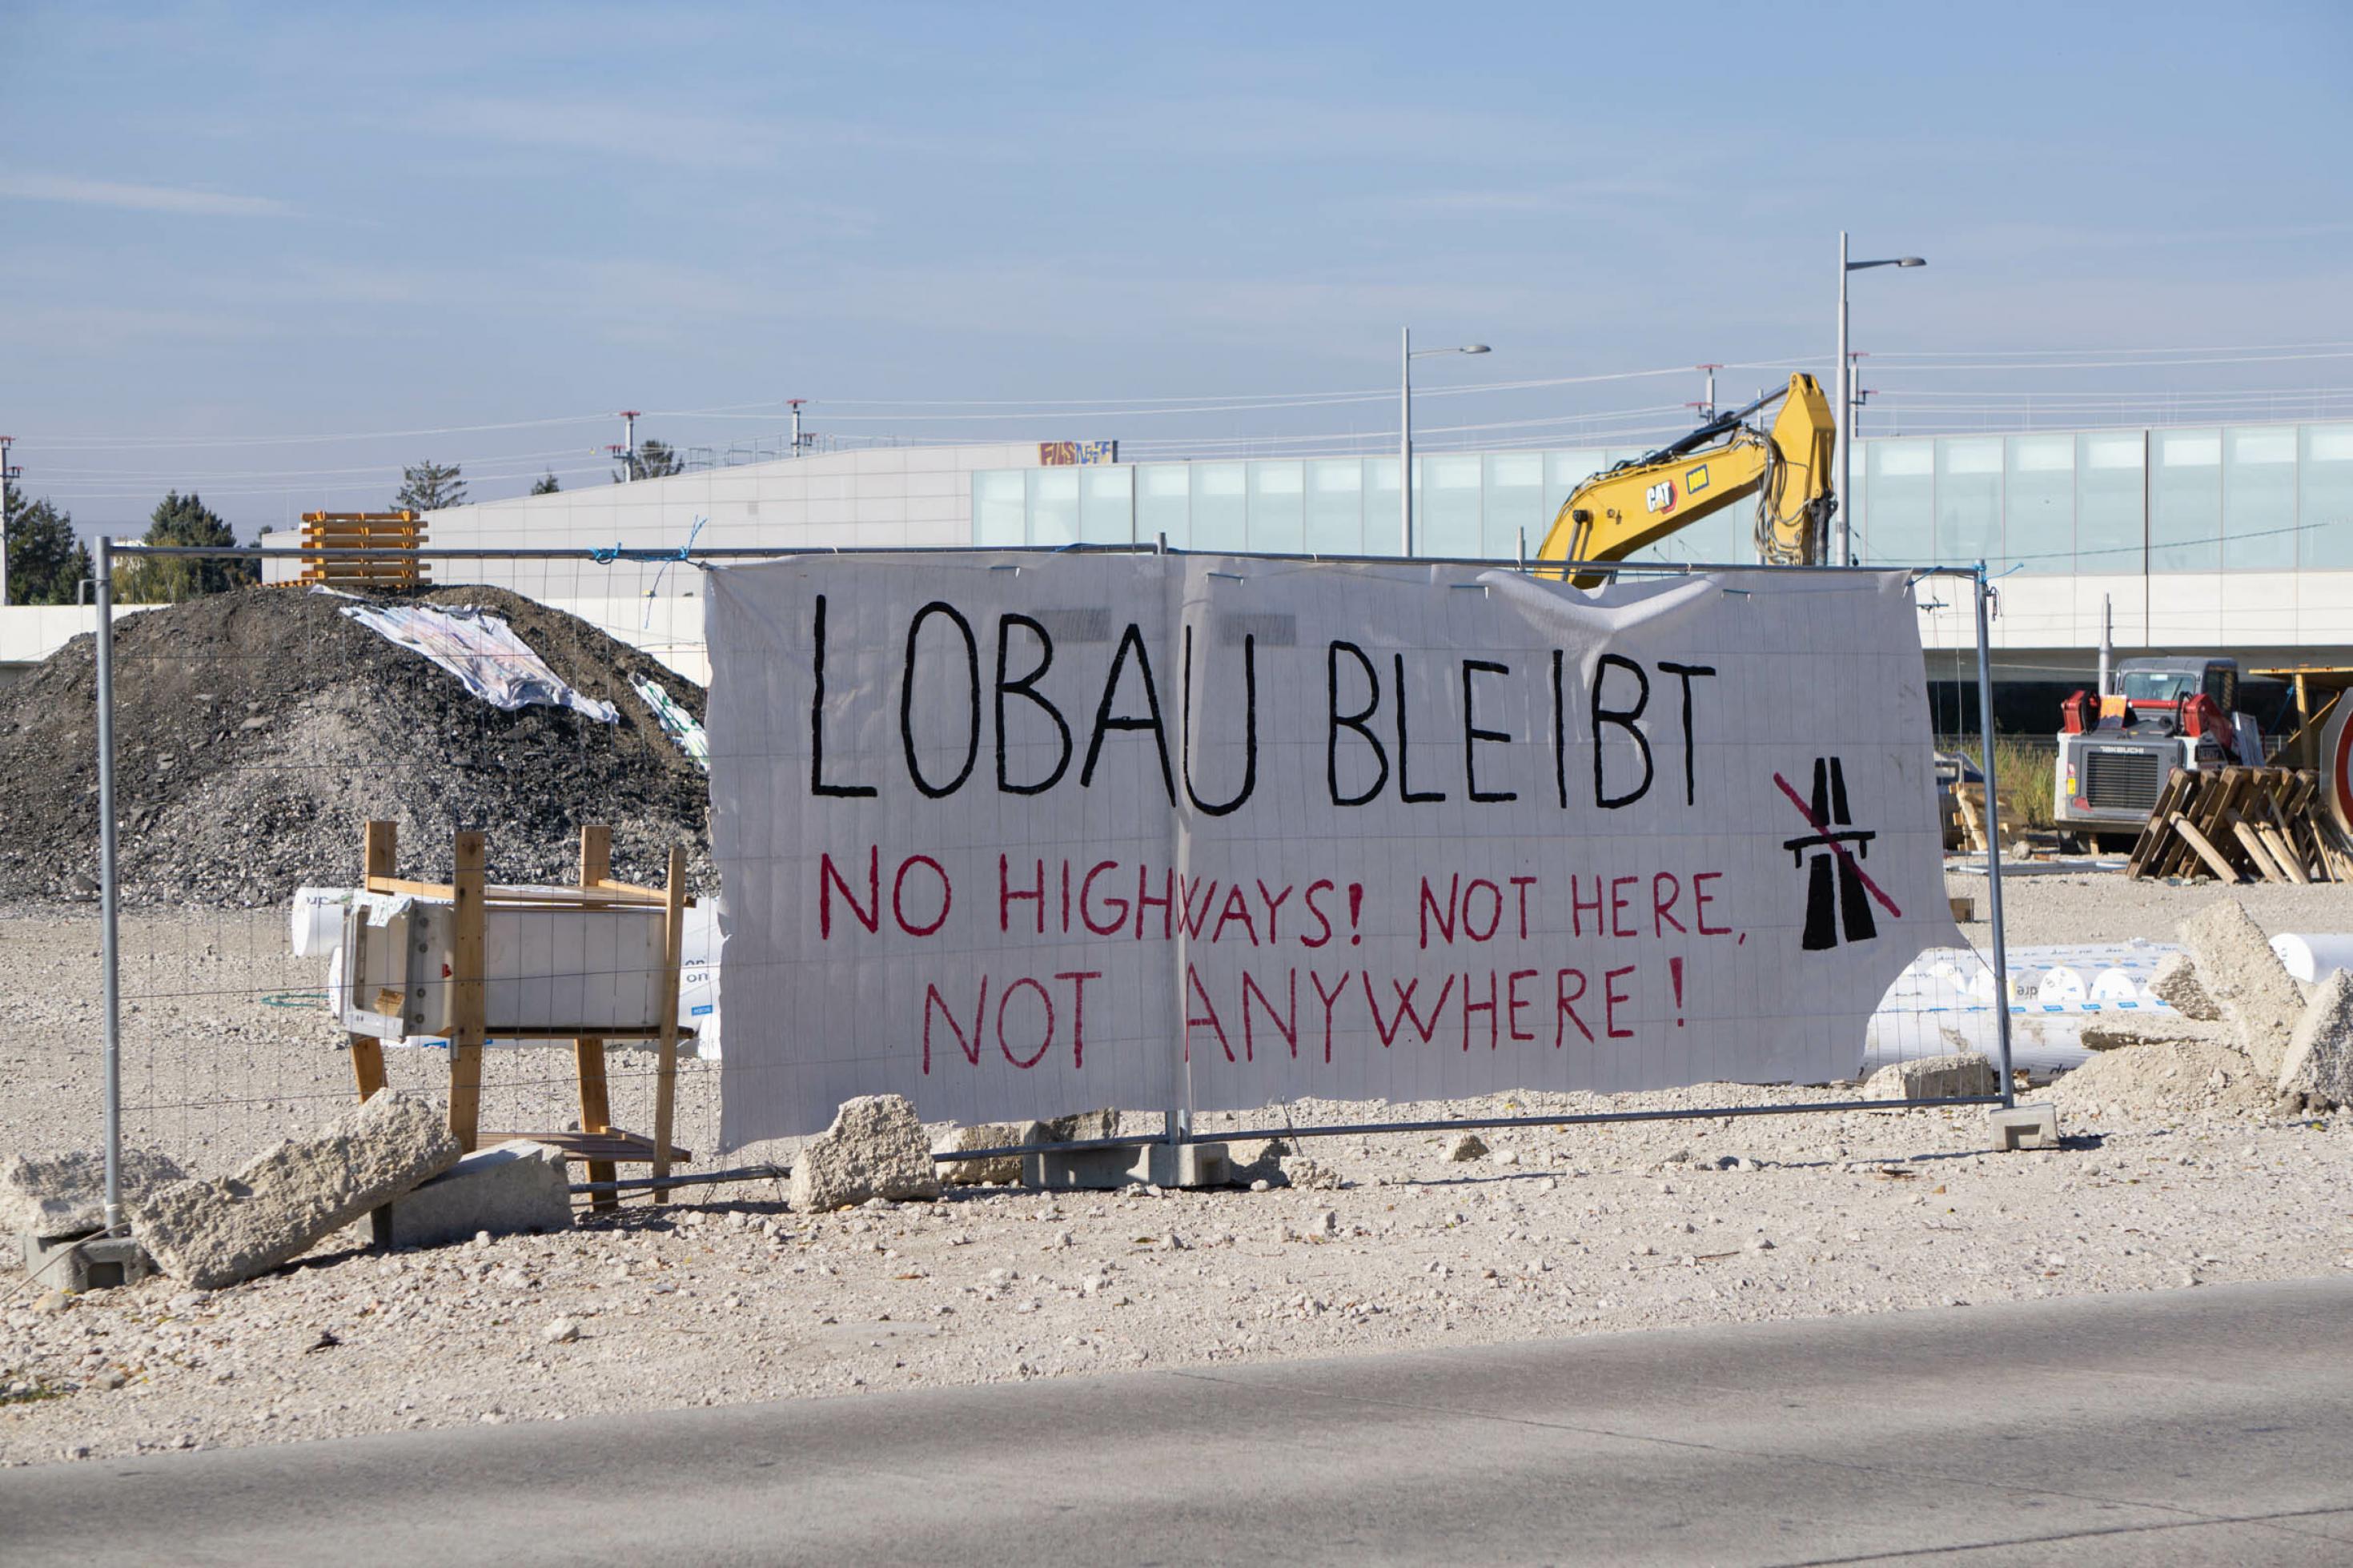 Transparent auf einem Baustellengitter mit der Aufschrift „Lobau bleibt! No highways! Not here, not anywhere!“